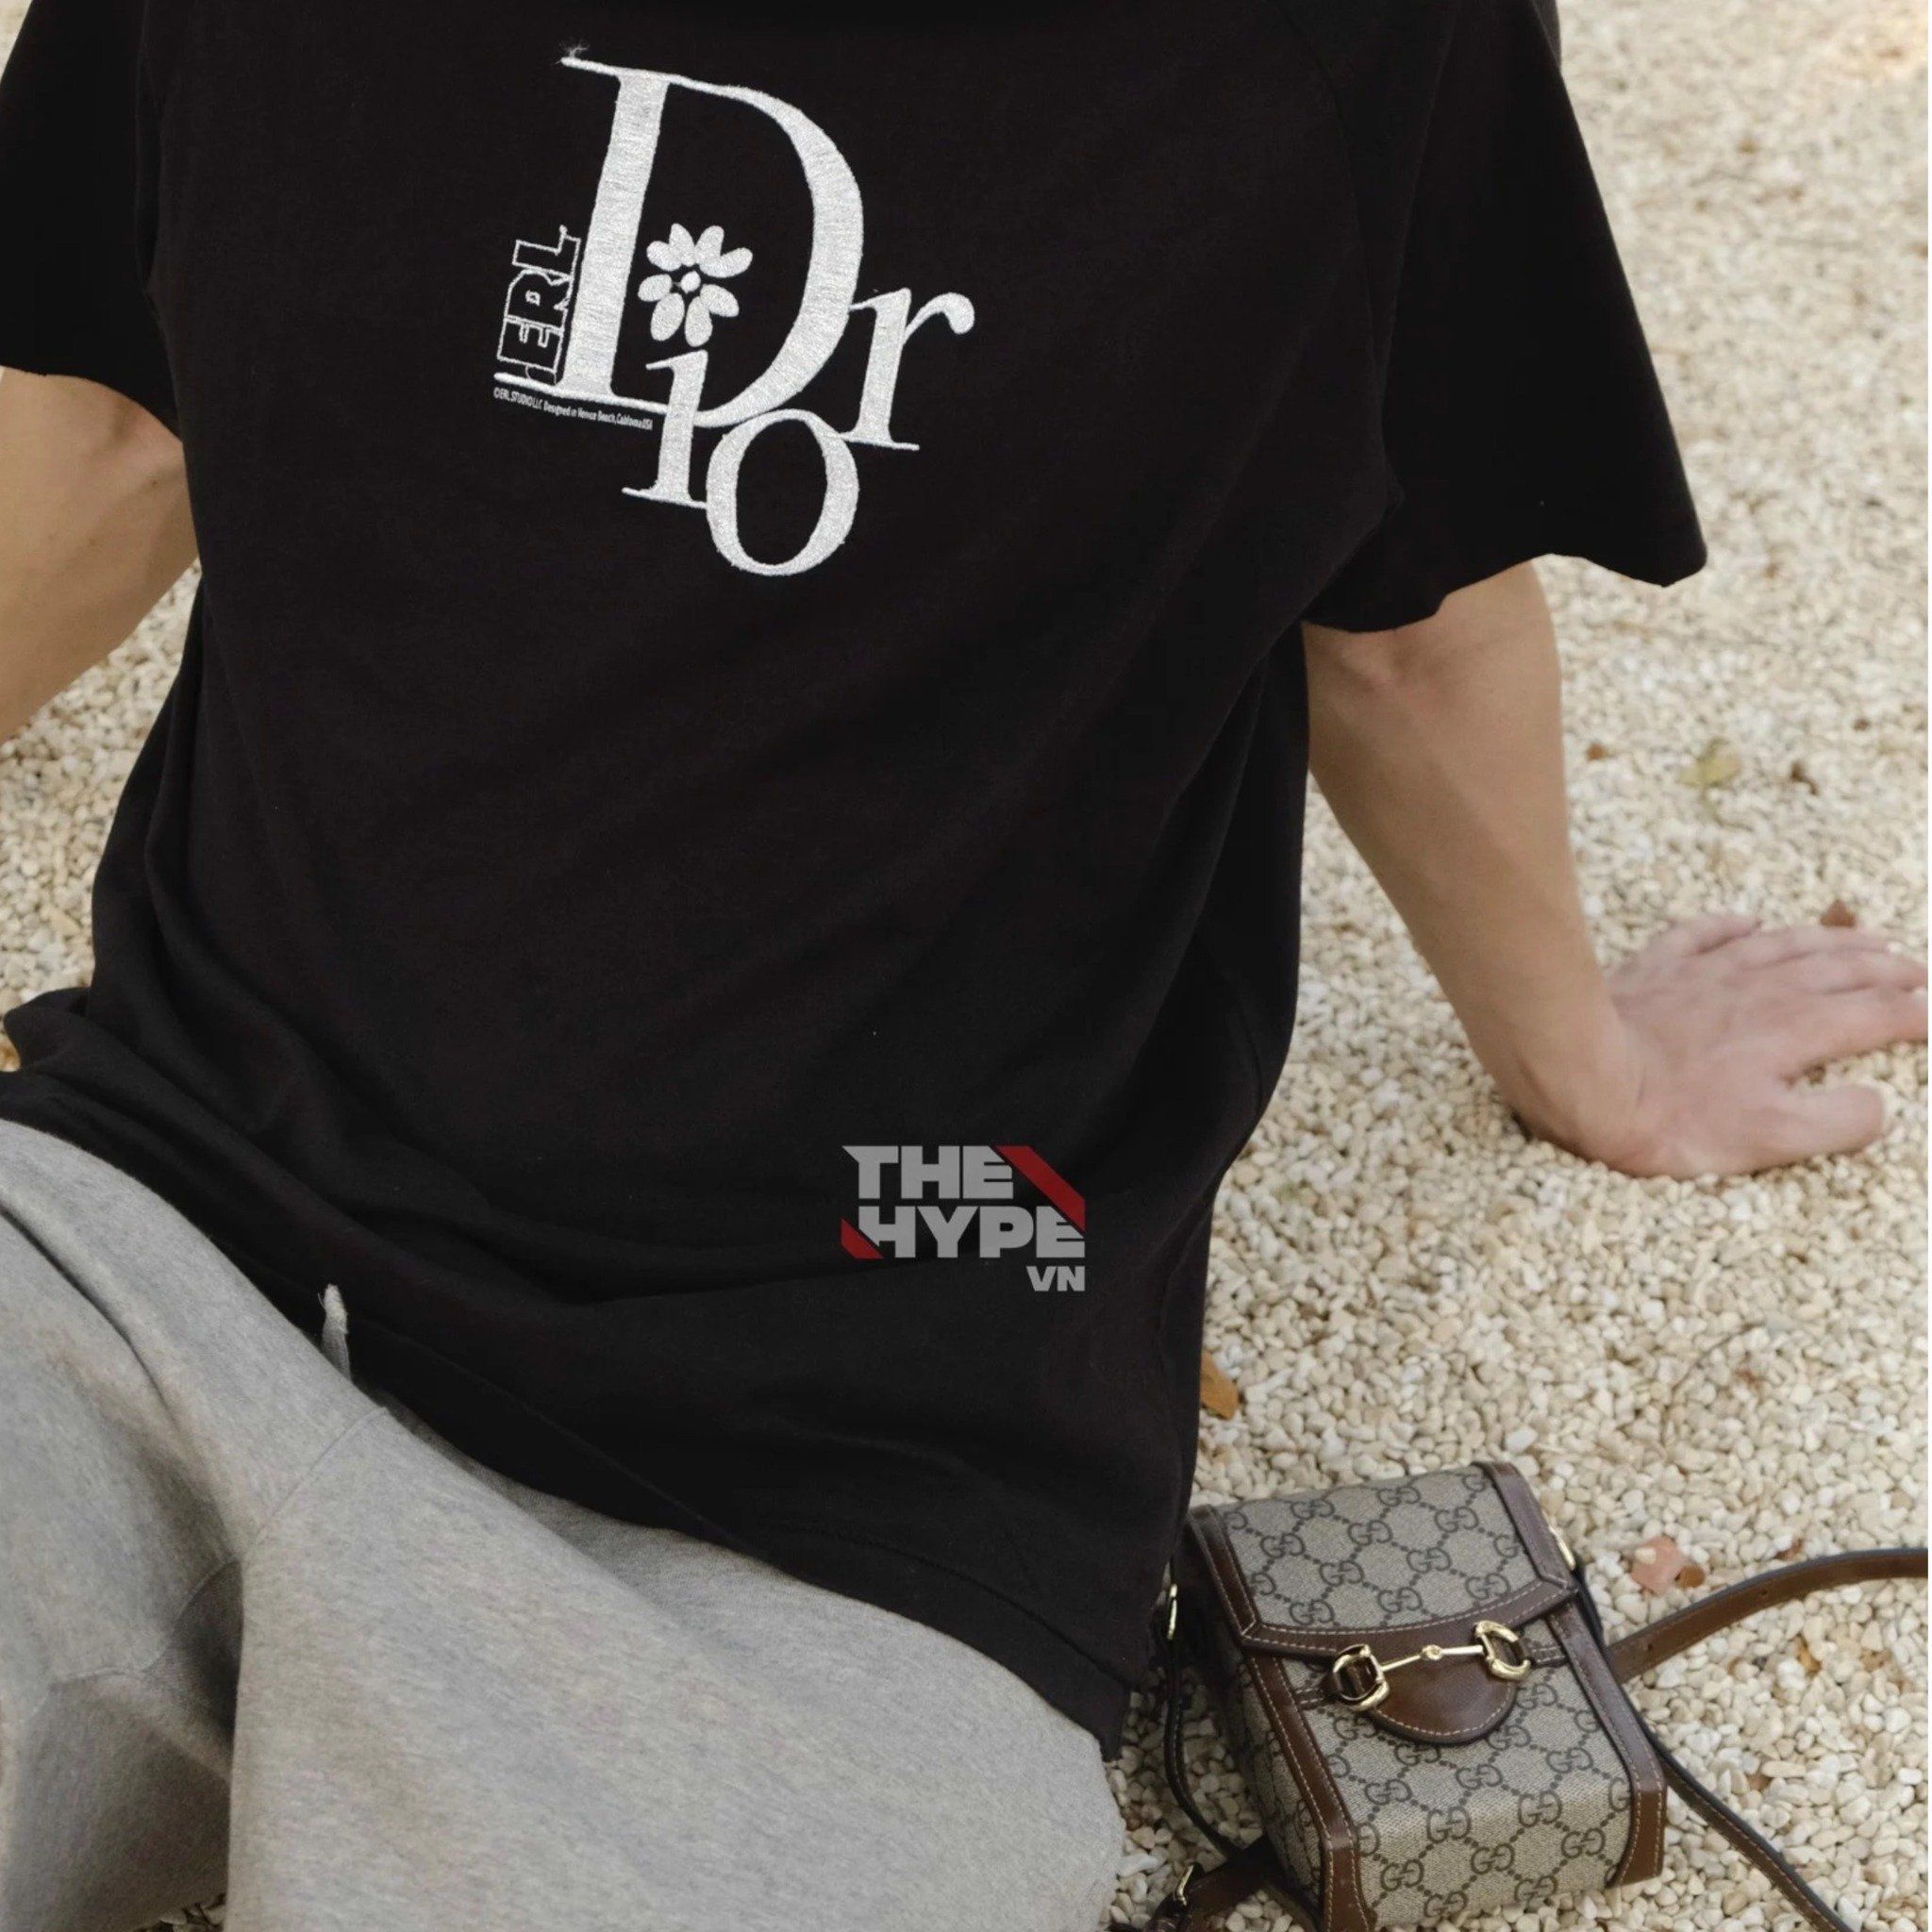  DIOR TEE - Áo Dior Chữ Logo By Erl (Đen) [Mirror Quality] 